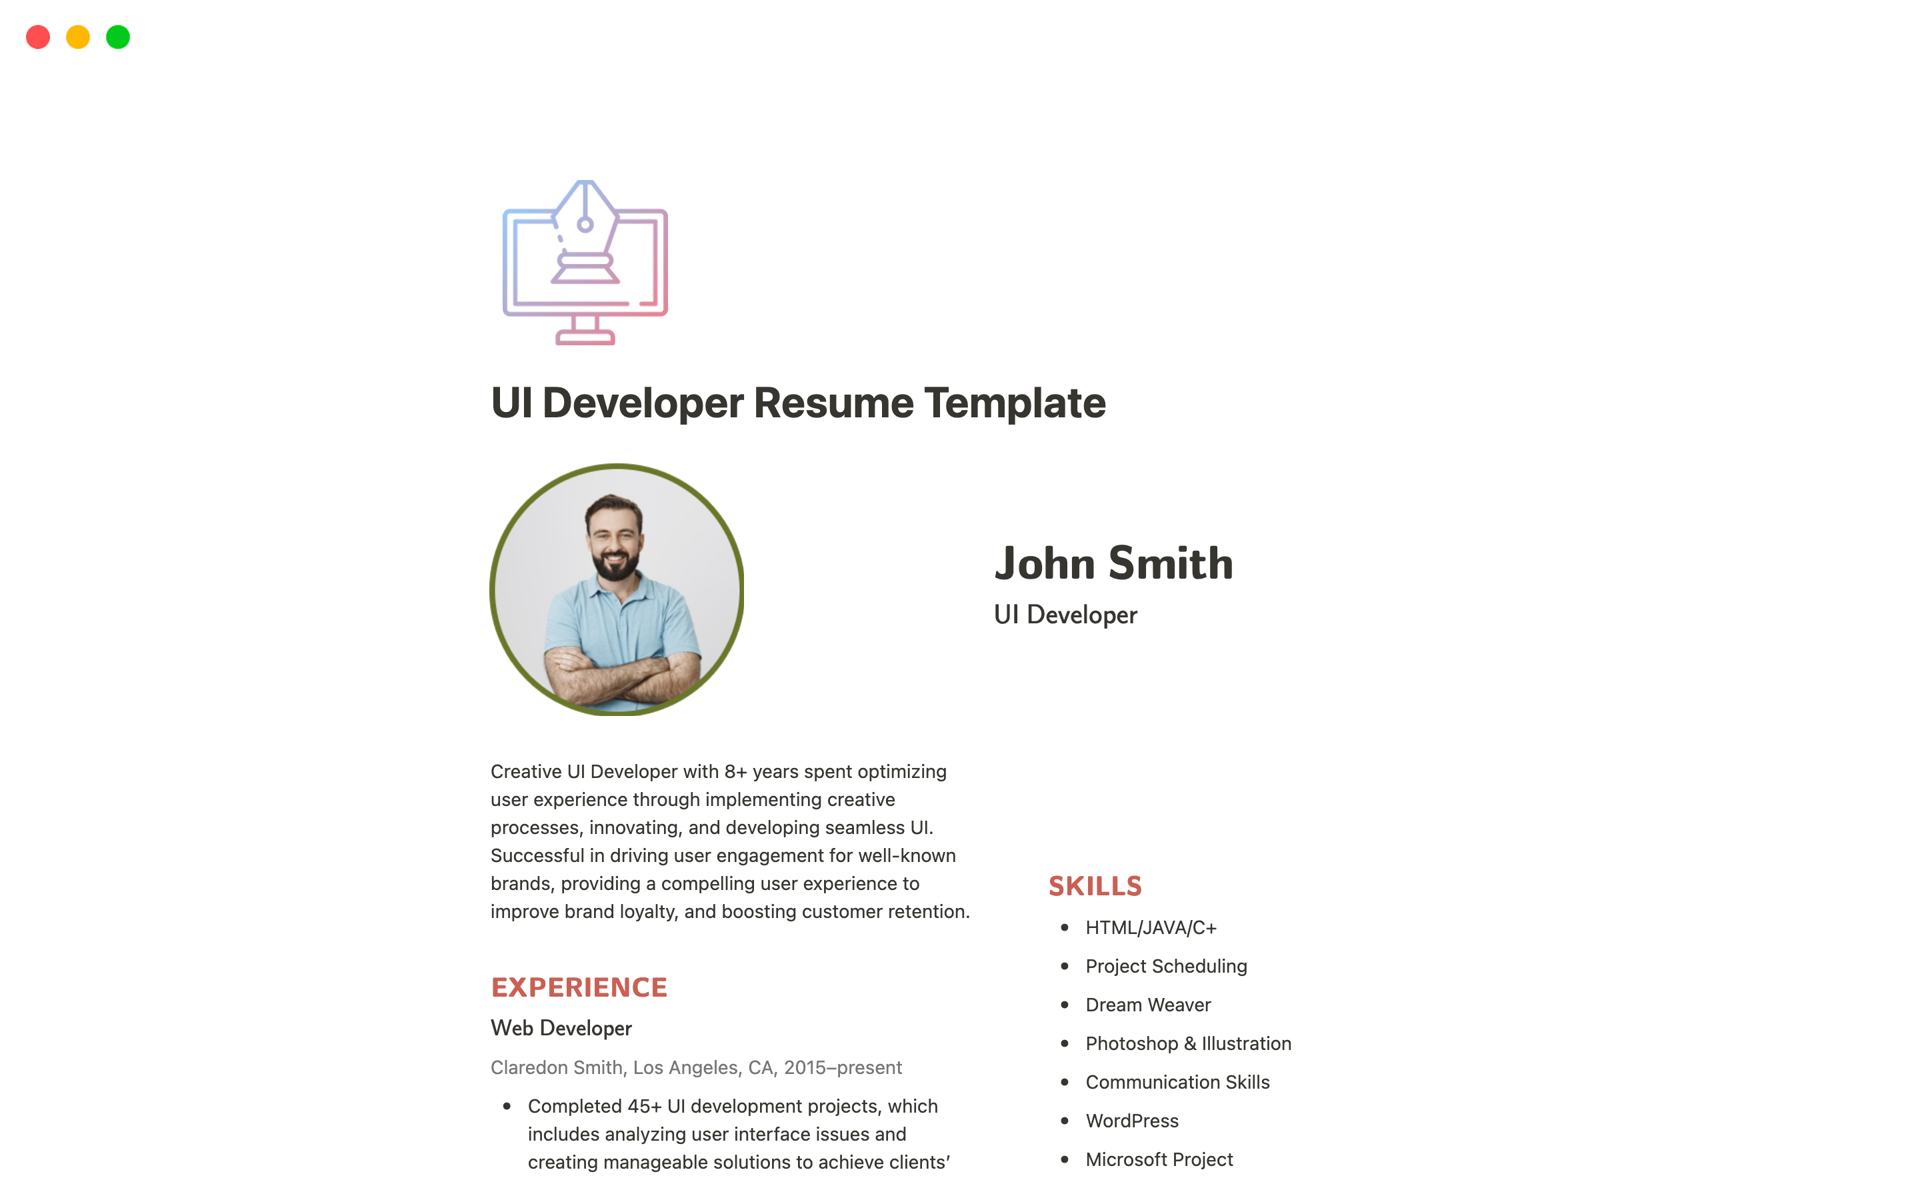 En förhandsgranskning av mallen för UI Developer Resume